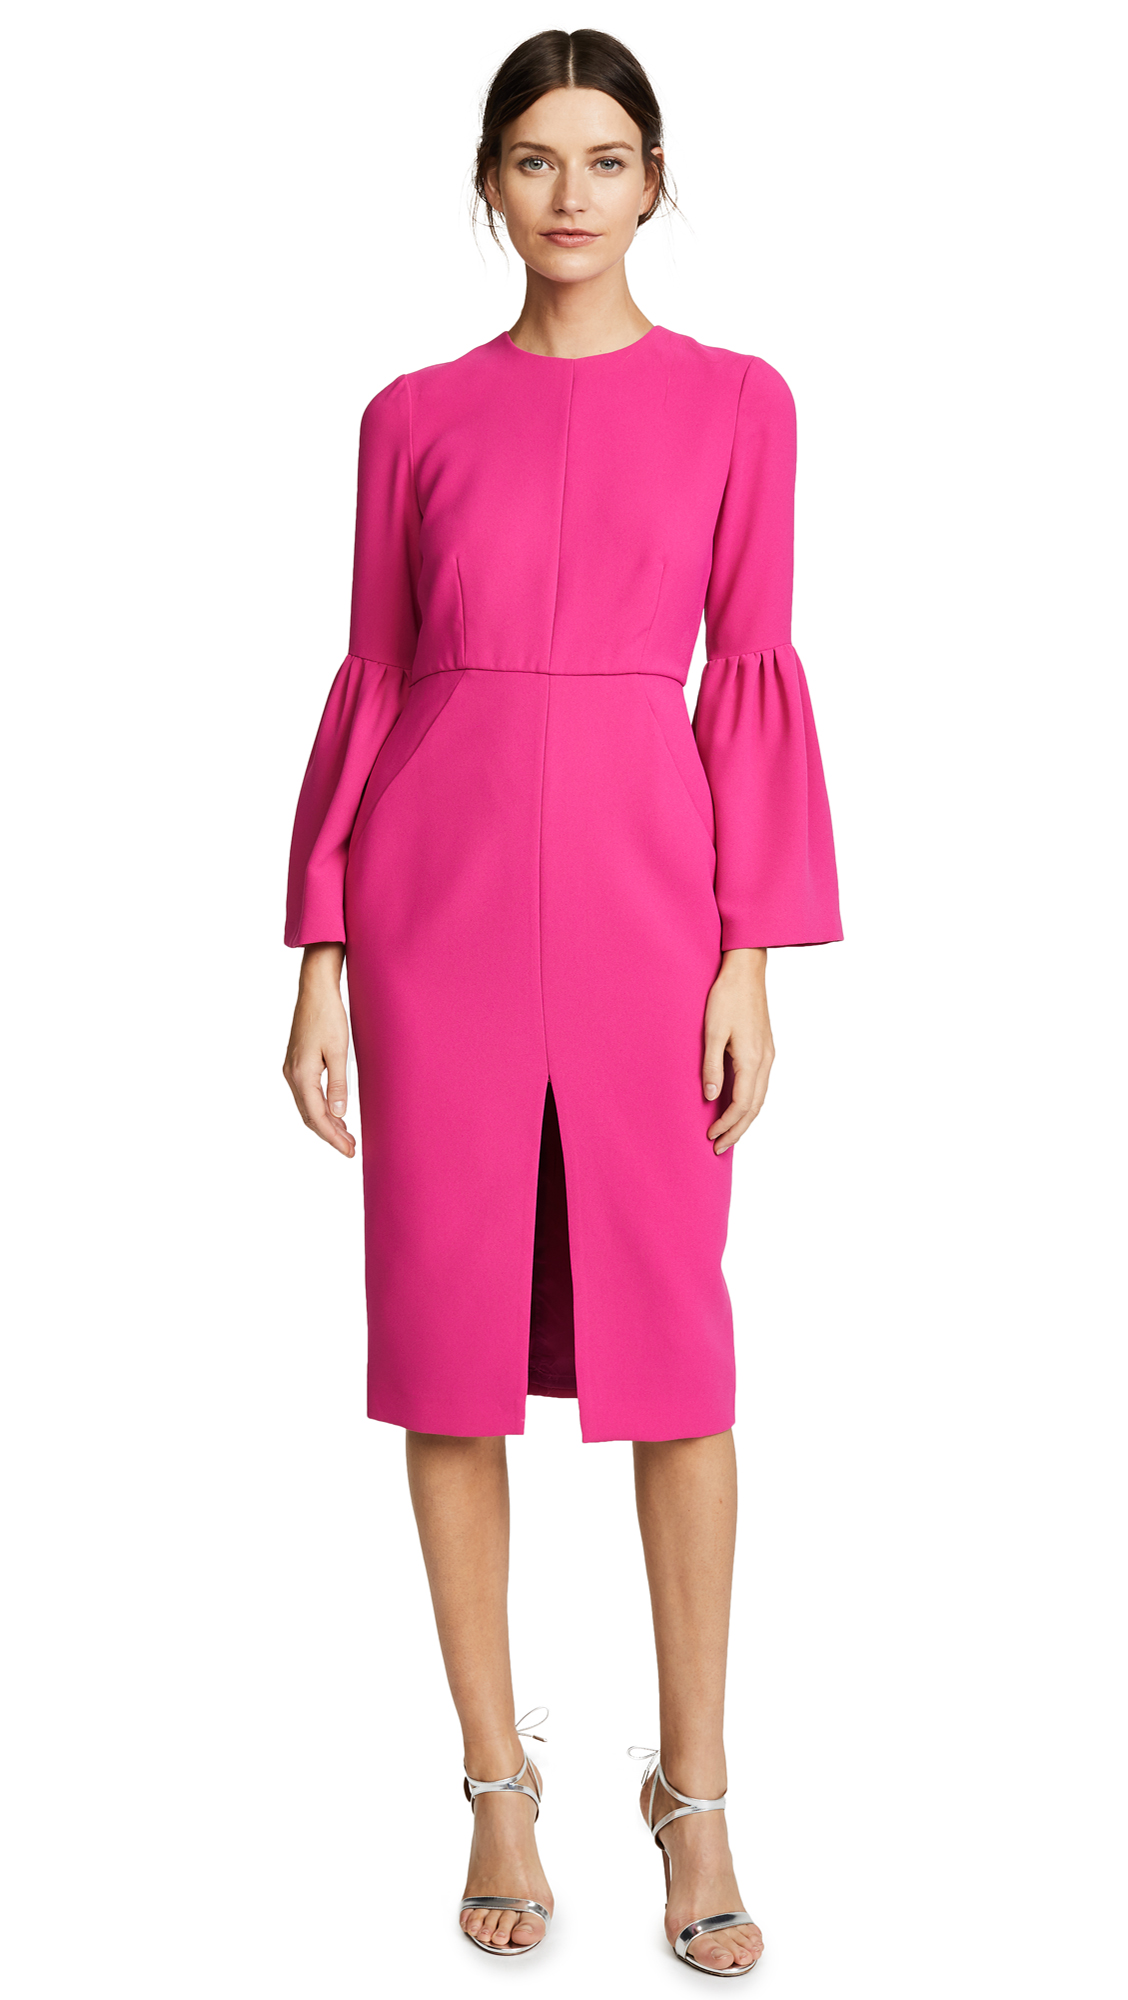 Jill Jill Stuart Bell Sleeved Dress - Bold Begonia Pink